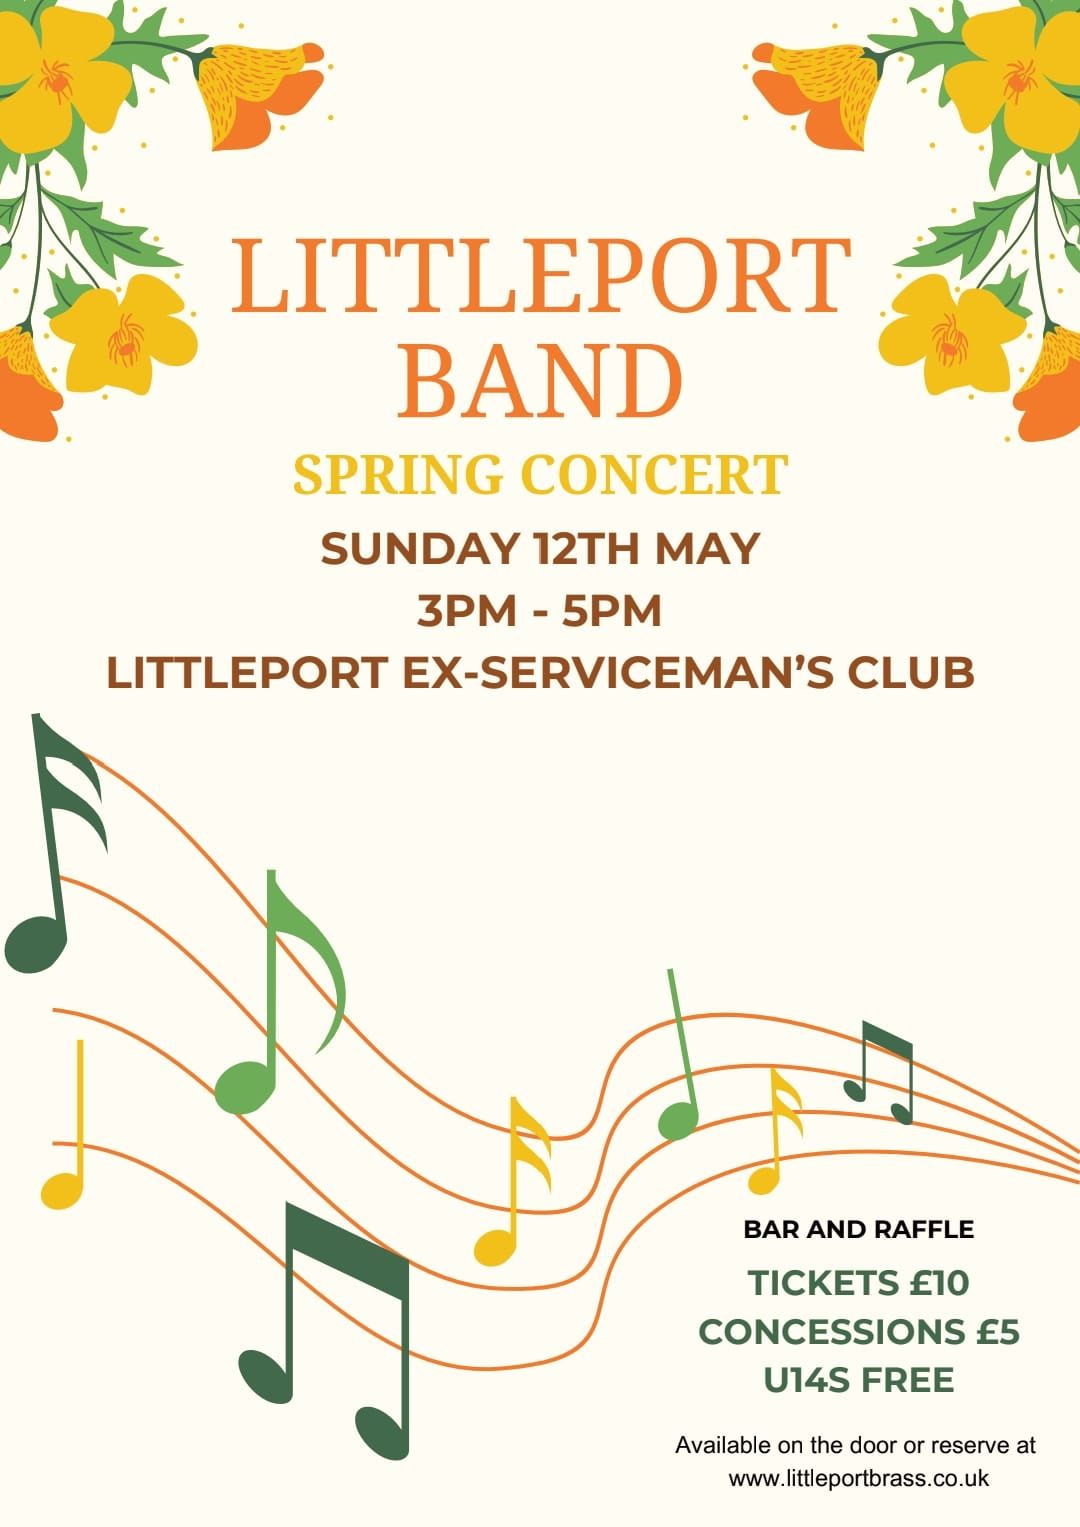 Littleport Band Spring Concert